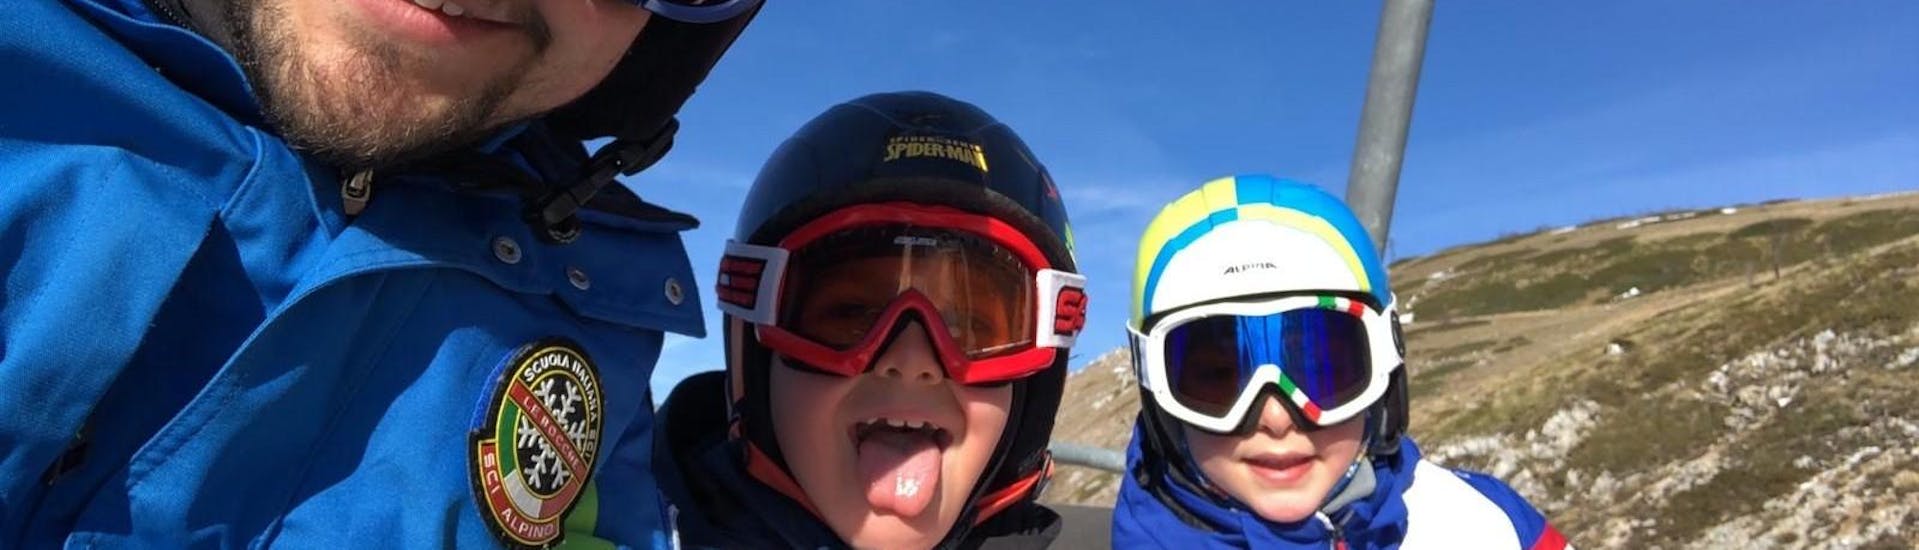 Clases de esquí para niños a partir de 5 años para avanzados.